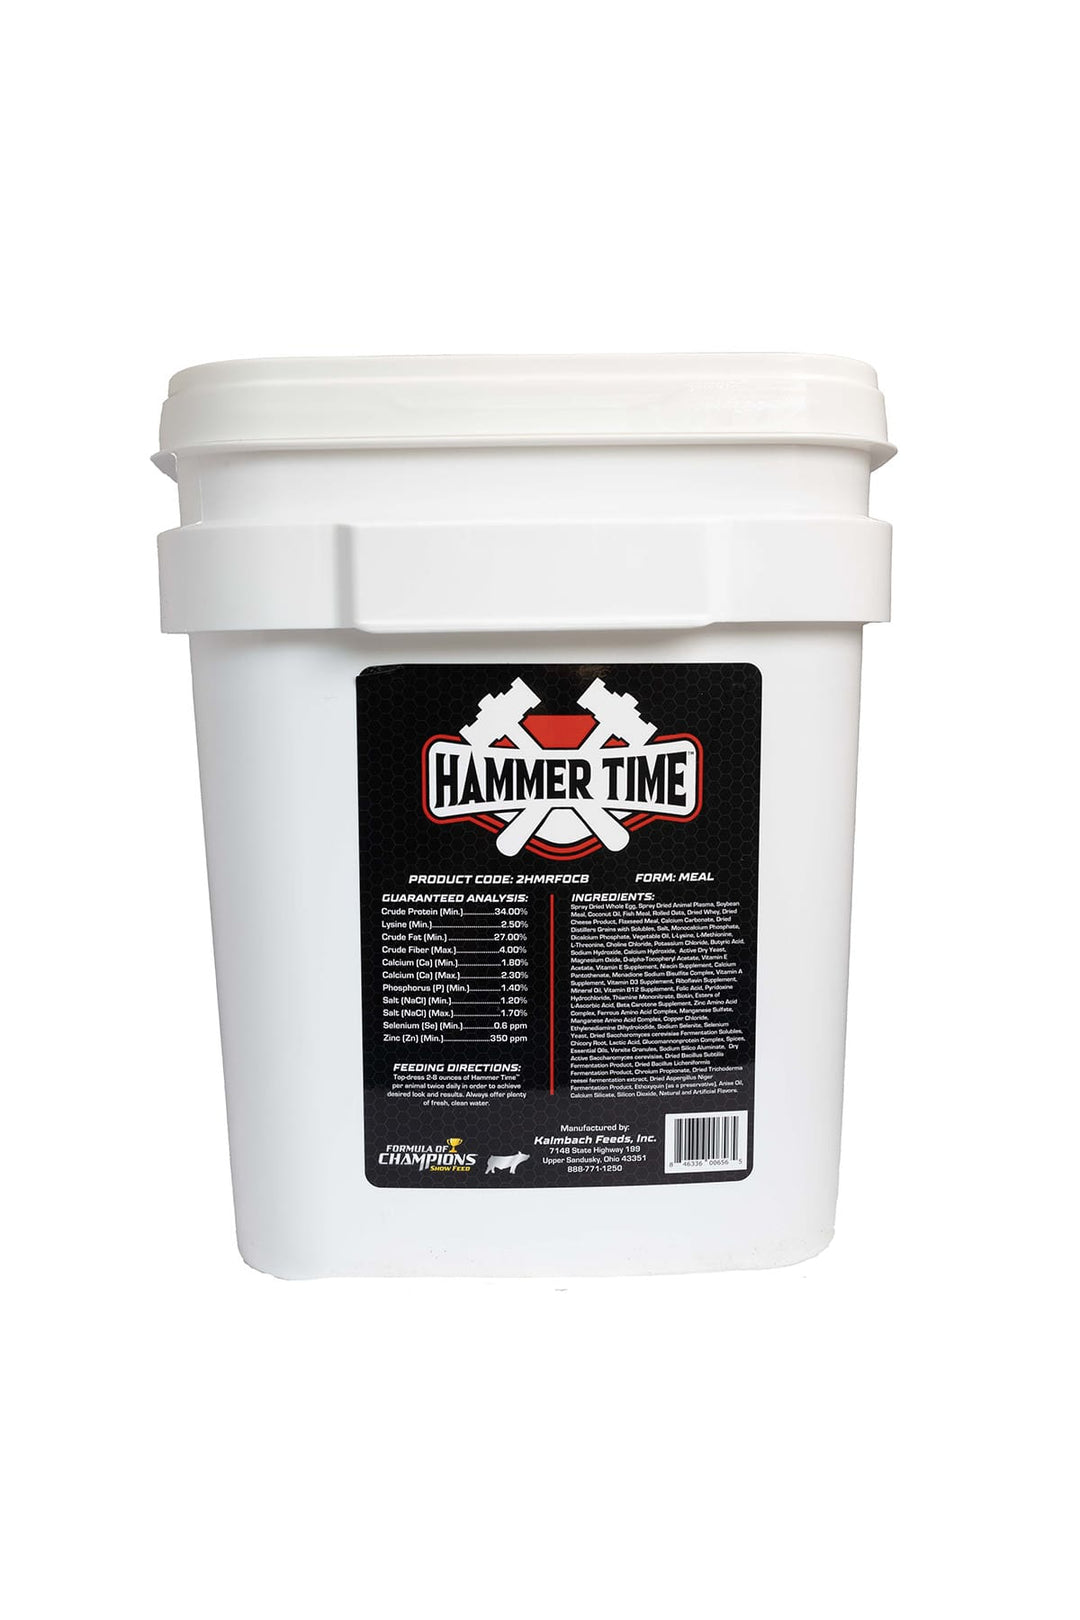 hammer time bucket back pig supplement